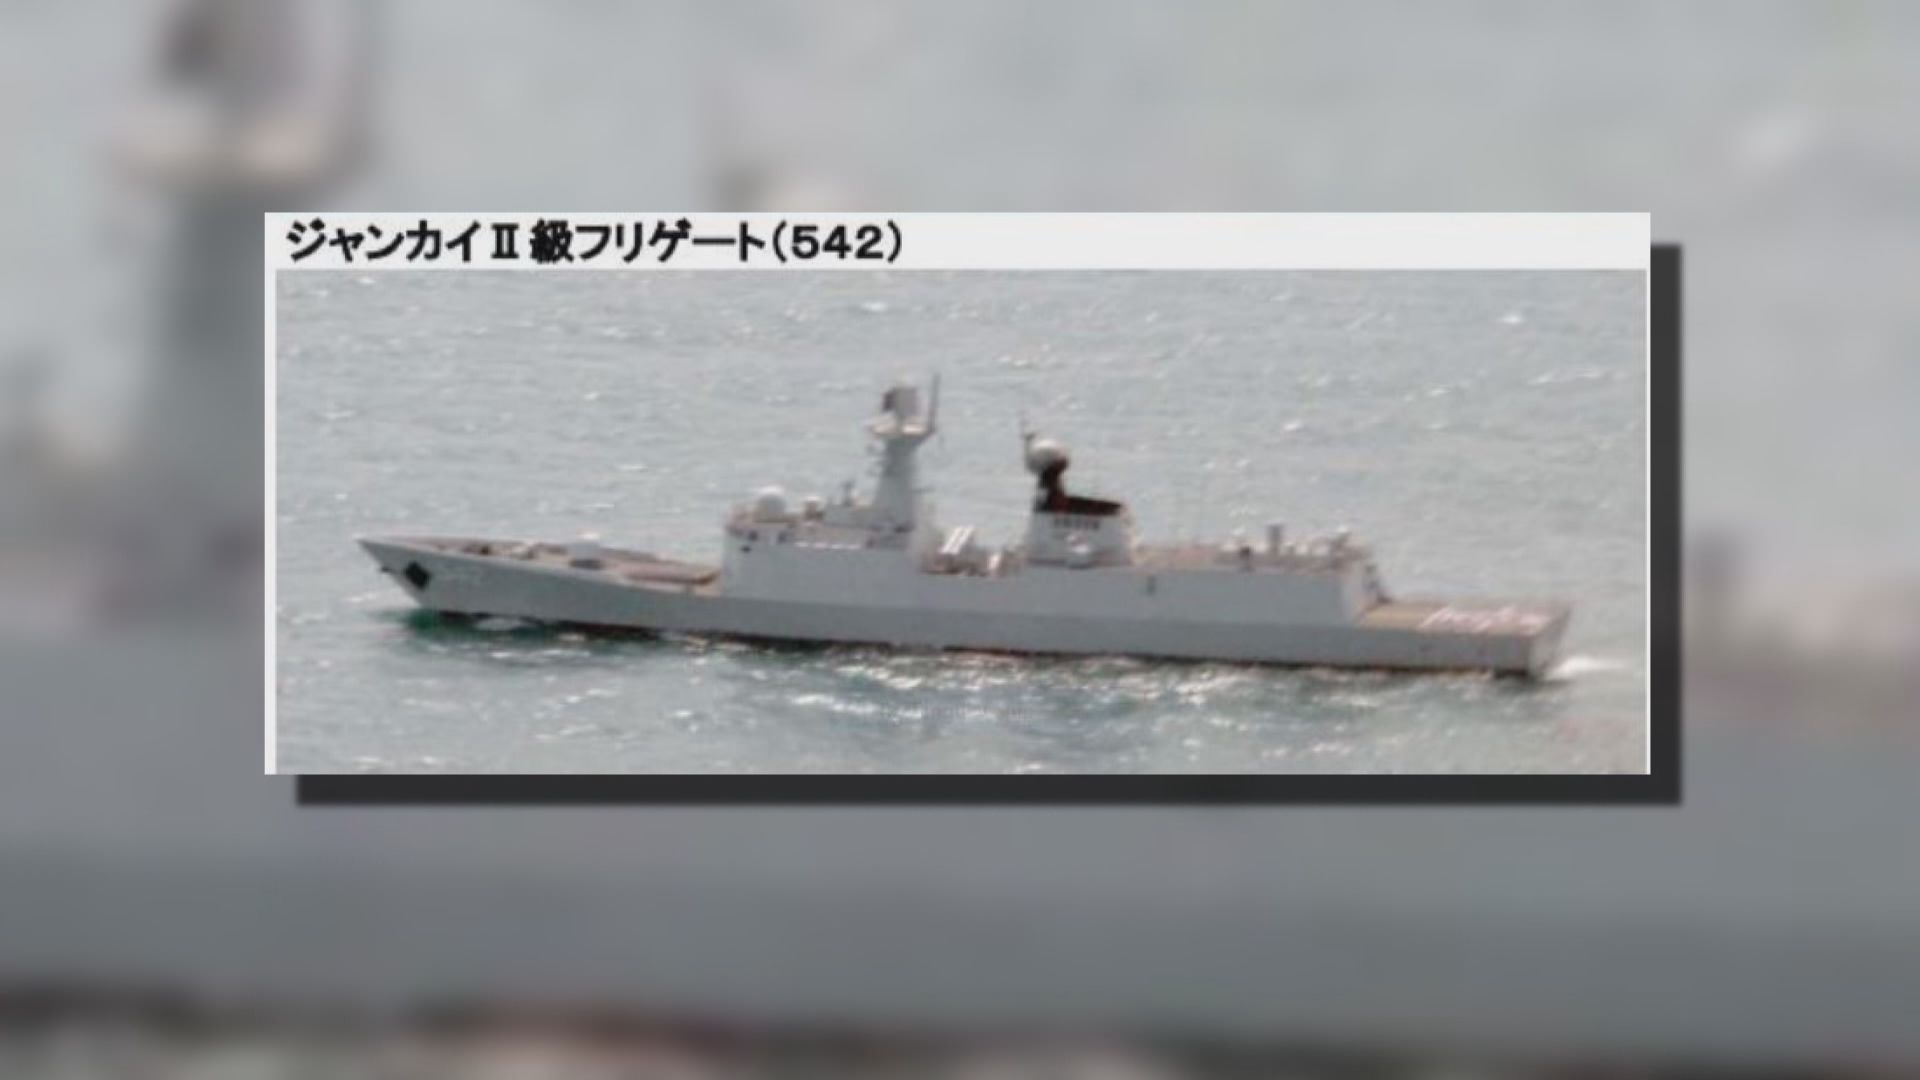 中國遼寧艦穿越沖繩與宮古島之間海域